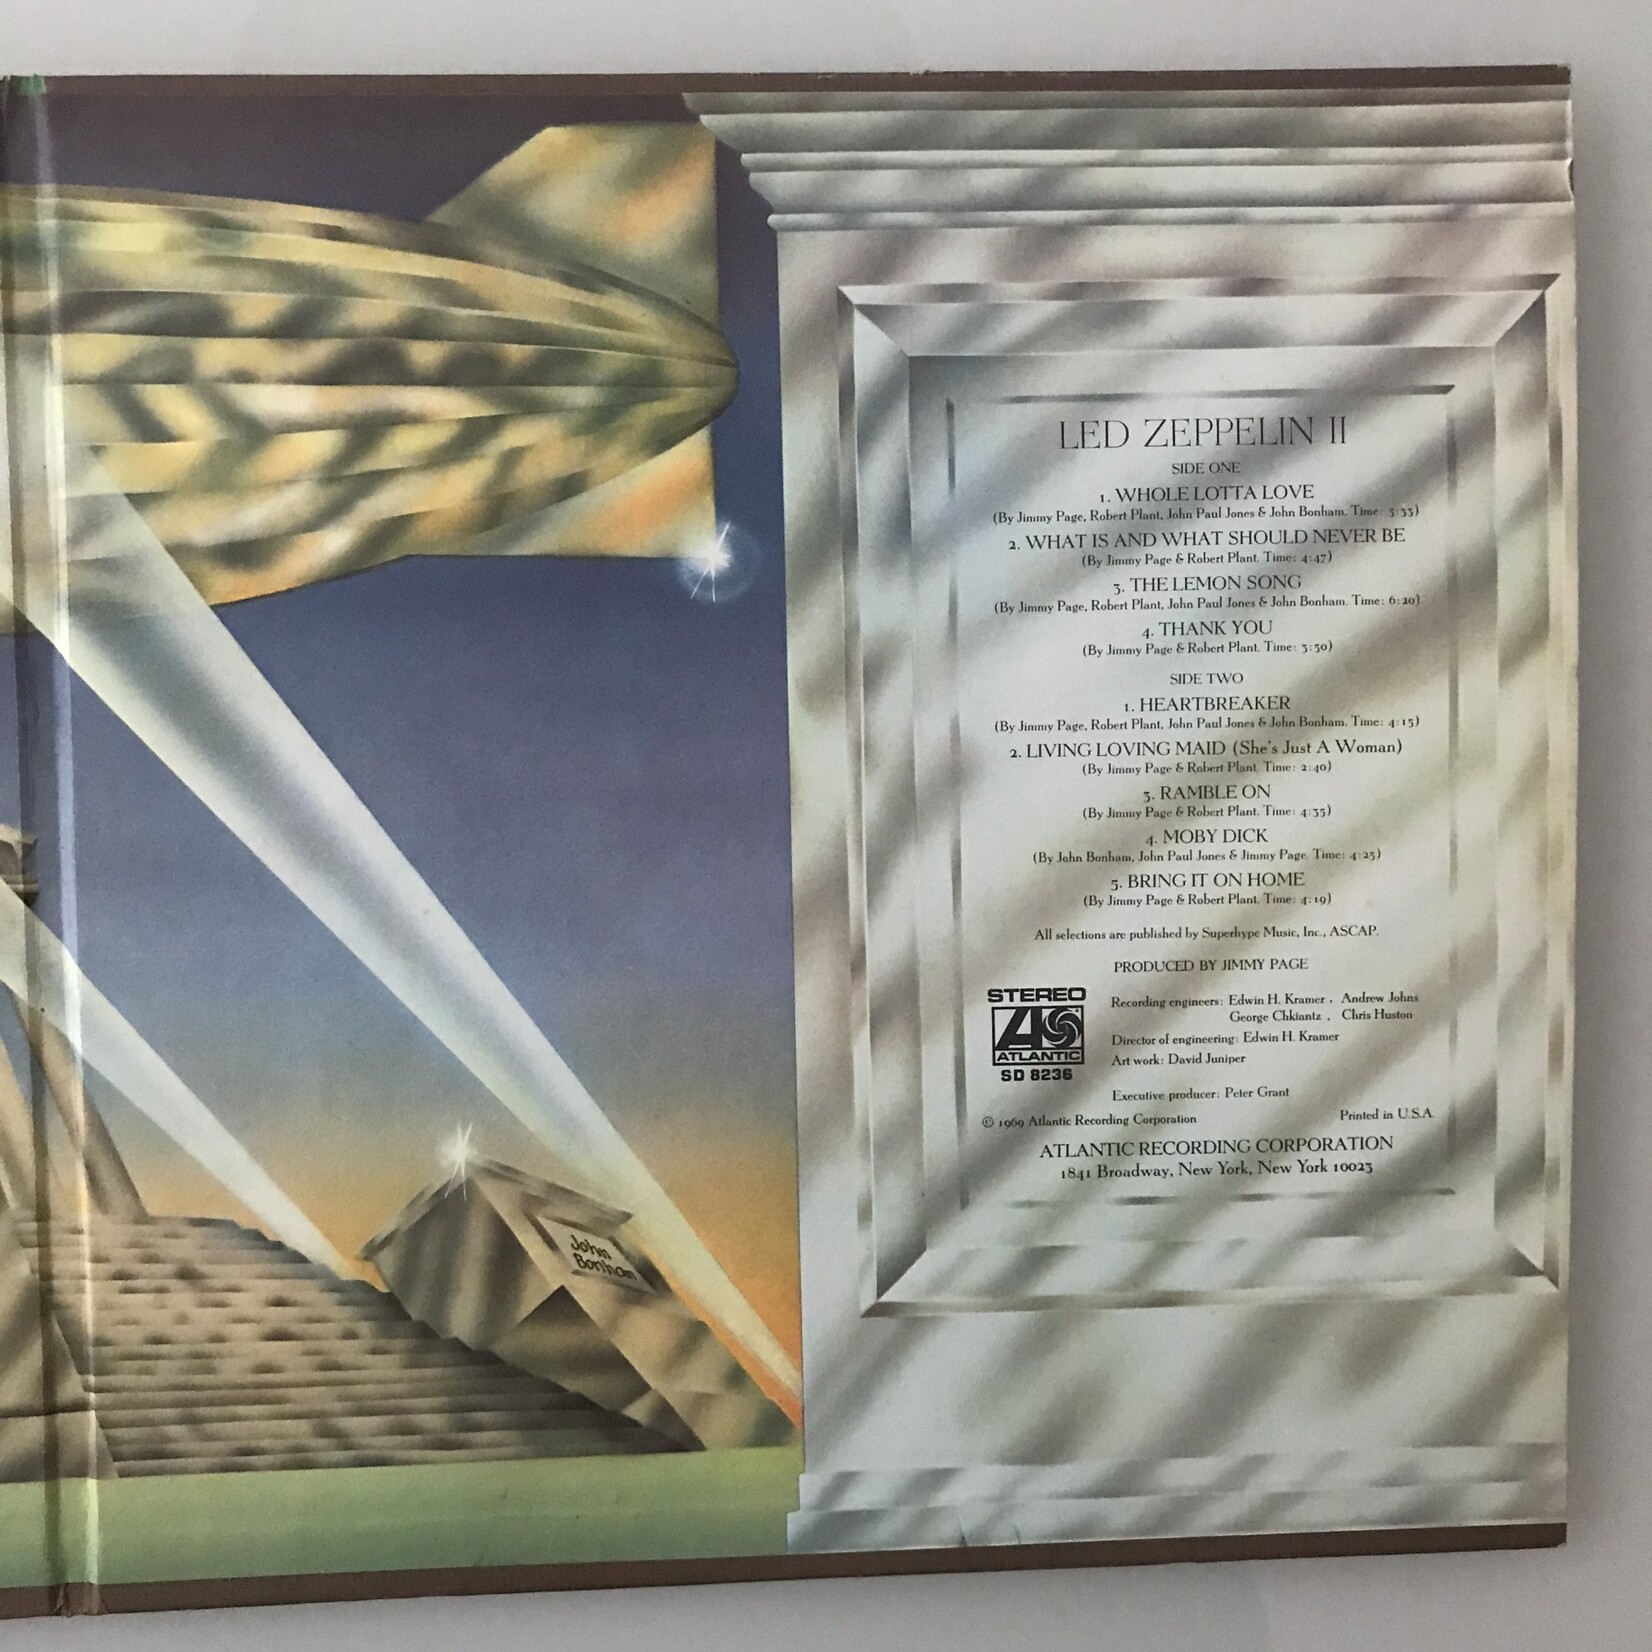 Led Zeppelin - Led Zepellin II - SD8236 - Vinyl LP (USED)